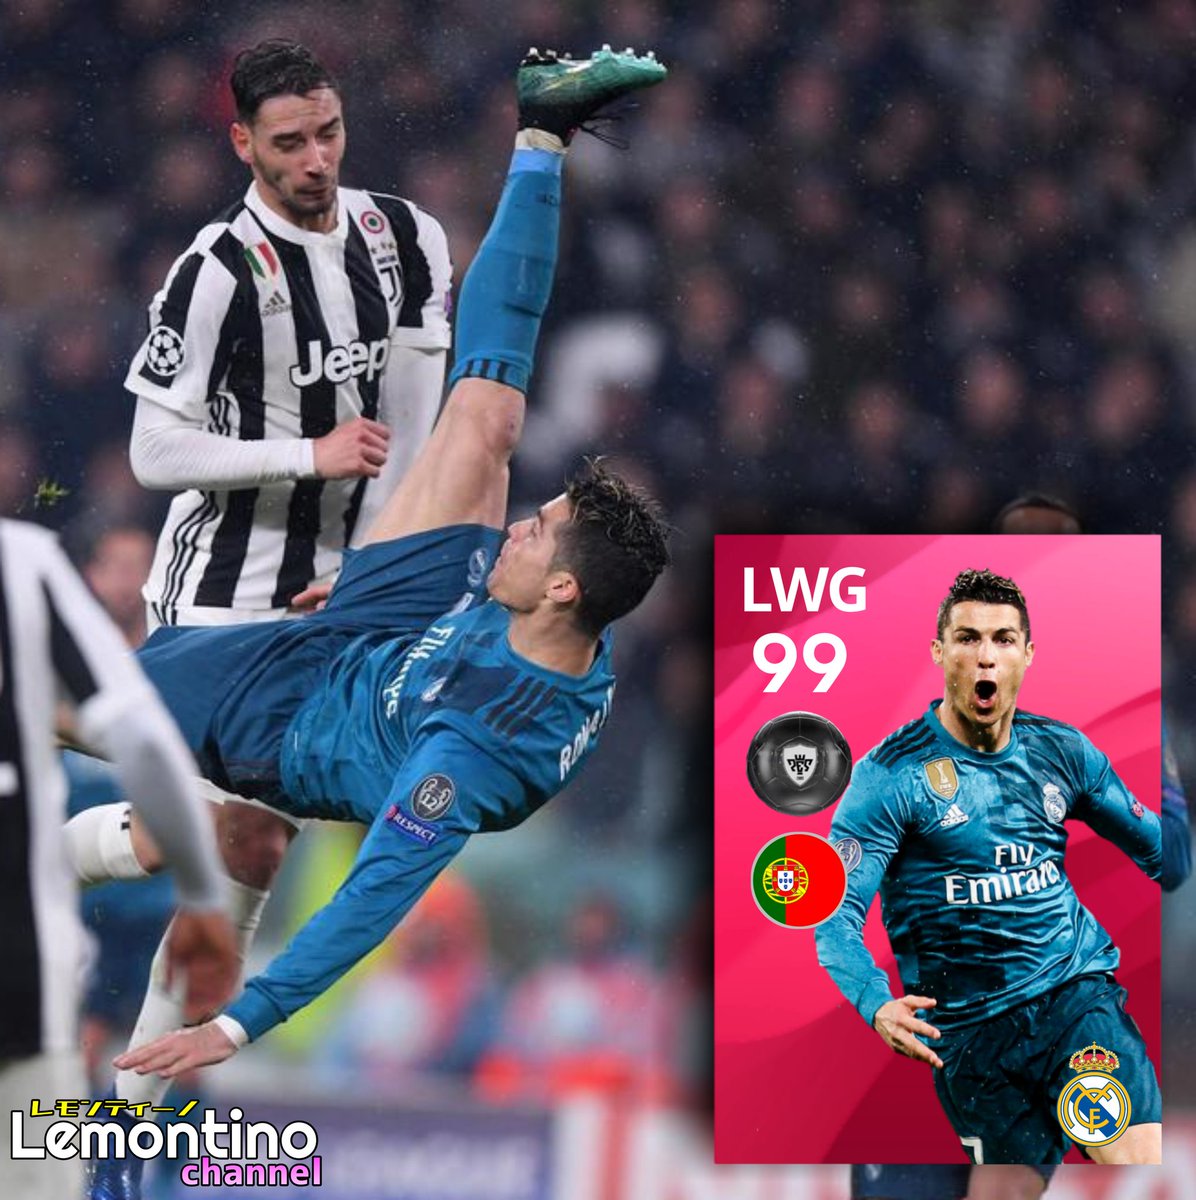 Aliel アリエル 誰もが欲しがる Iconic Moment Part 4 クリスティアーノ ロナウド 18 04 03の試合 のアイコニックモーメント あのオーバーヘッドはすごかった Cristiano Ronaldo Iconic Moment ウイイレ アプリ Pes Mobile